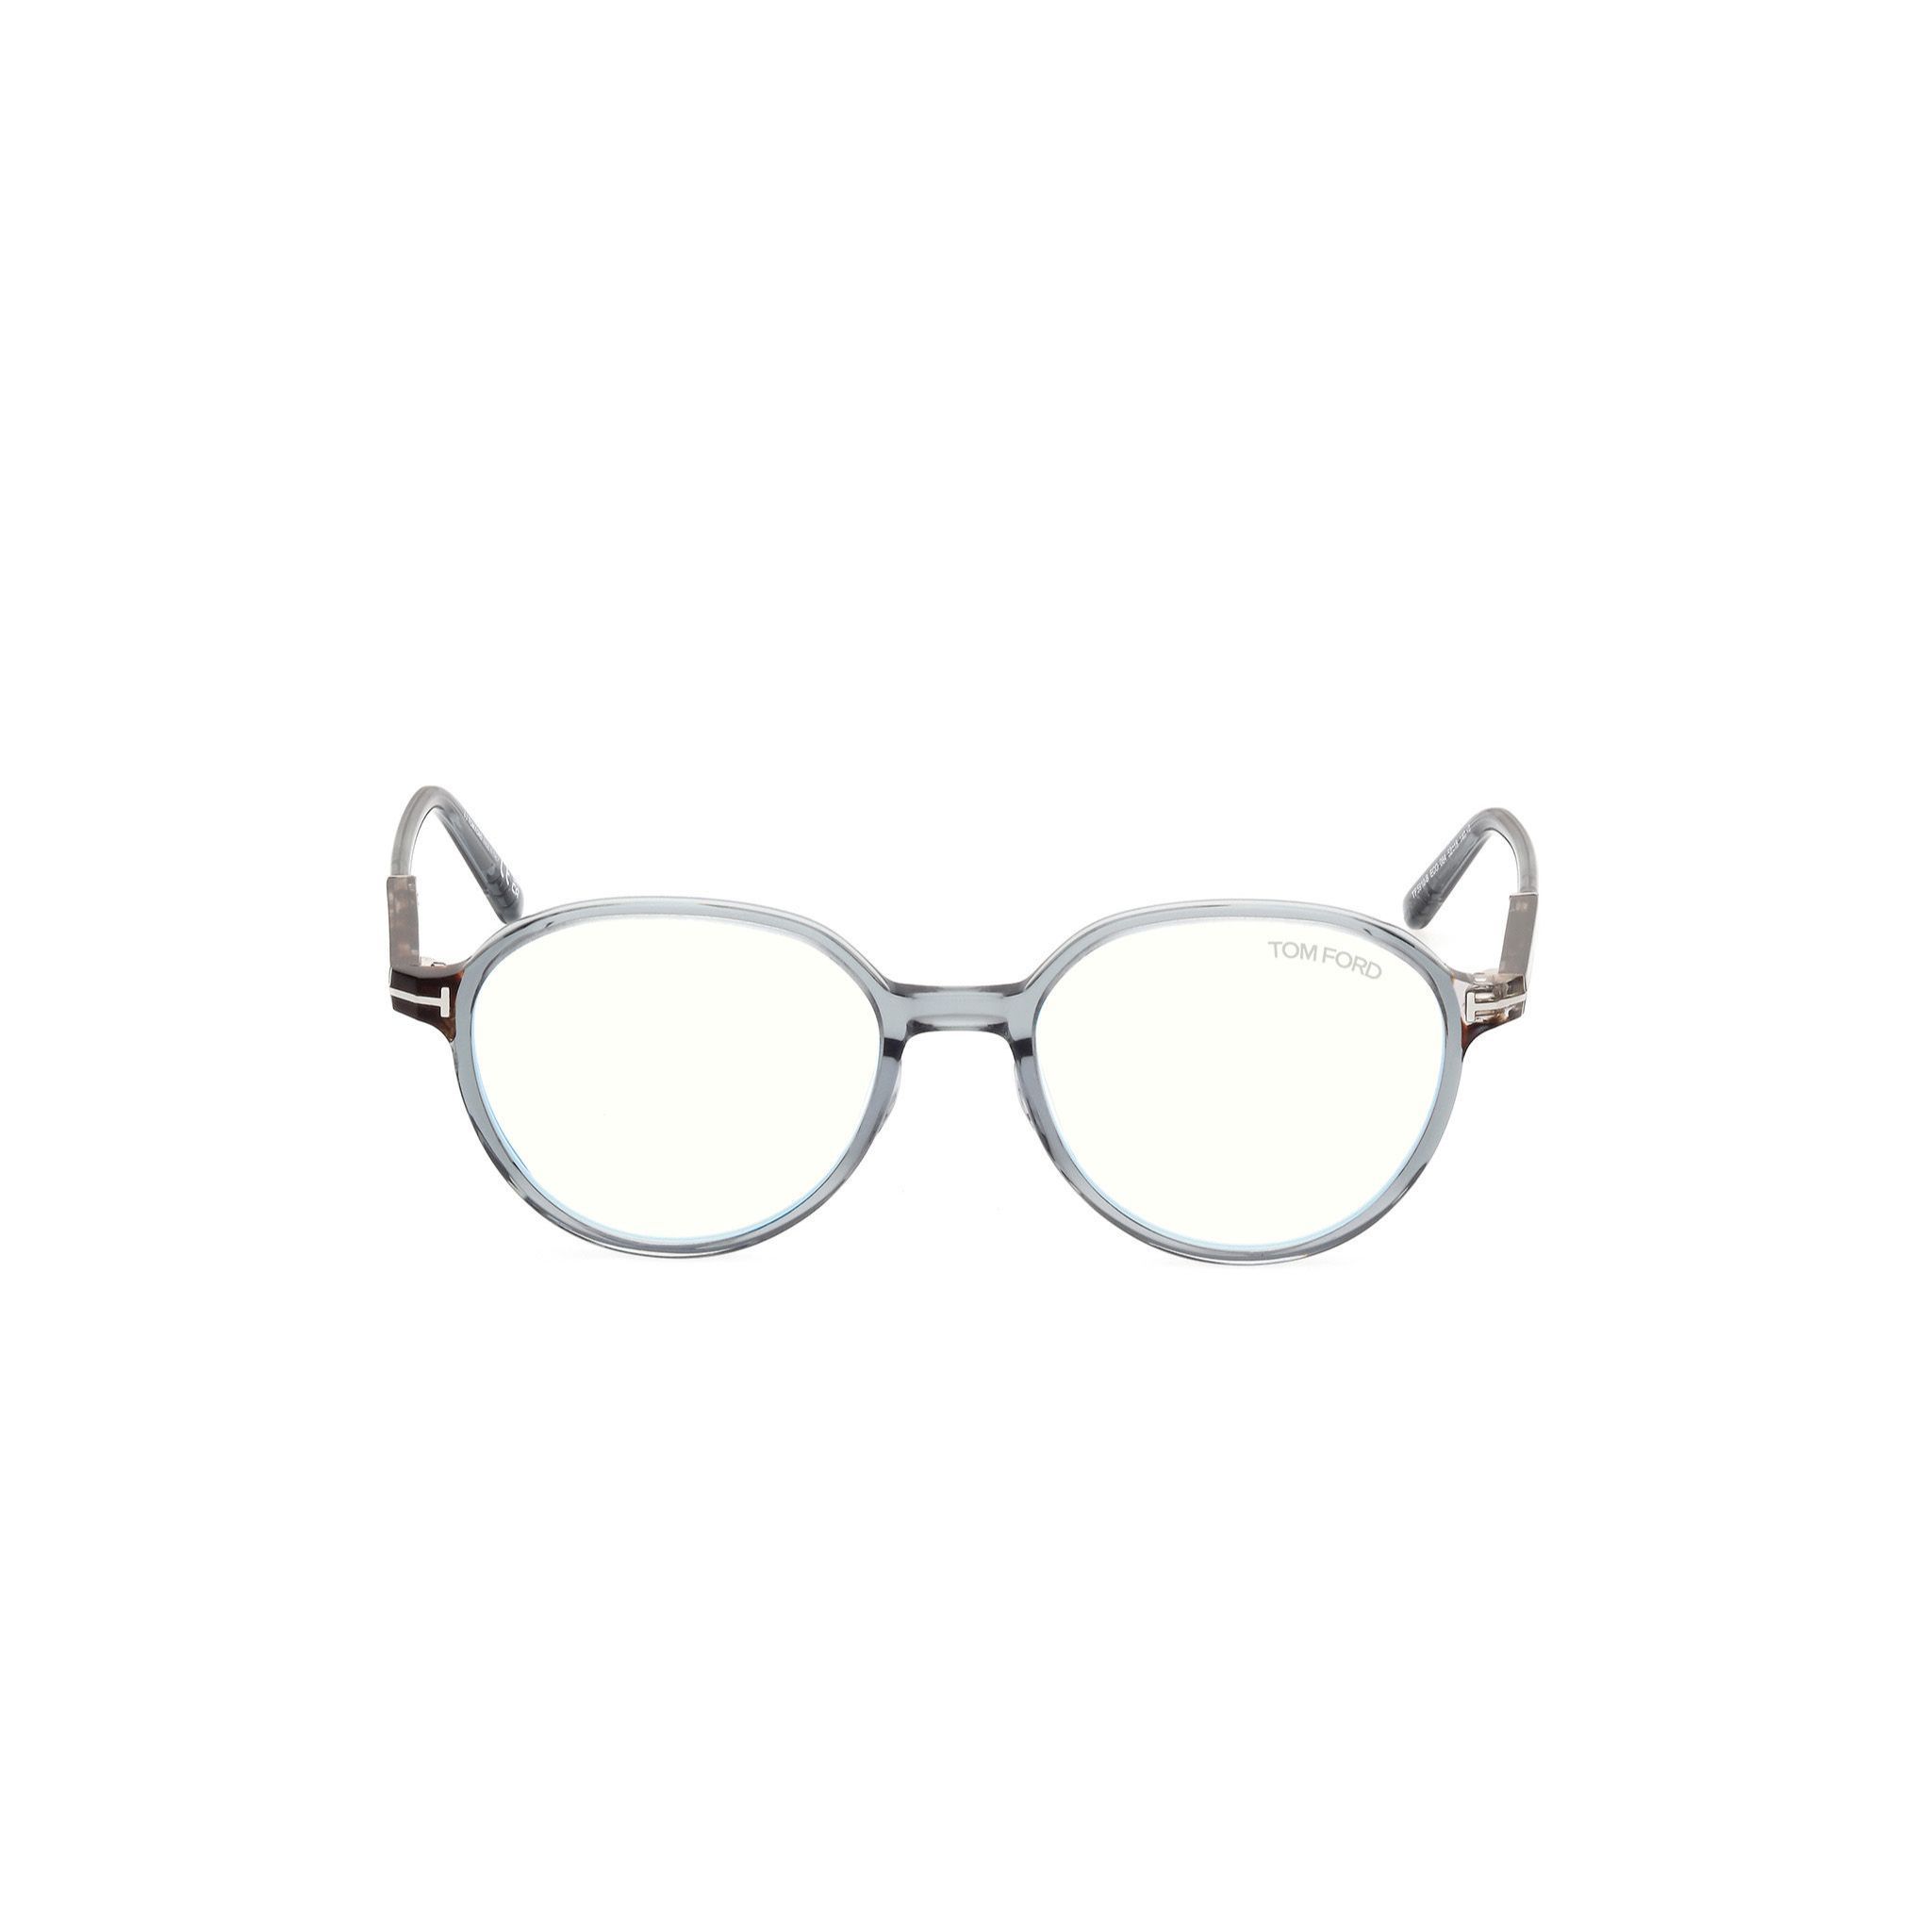 FT5910 Round Eyeglasses B084 - size  52